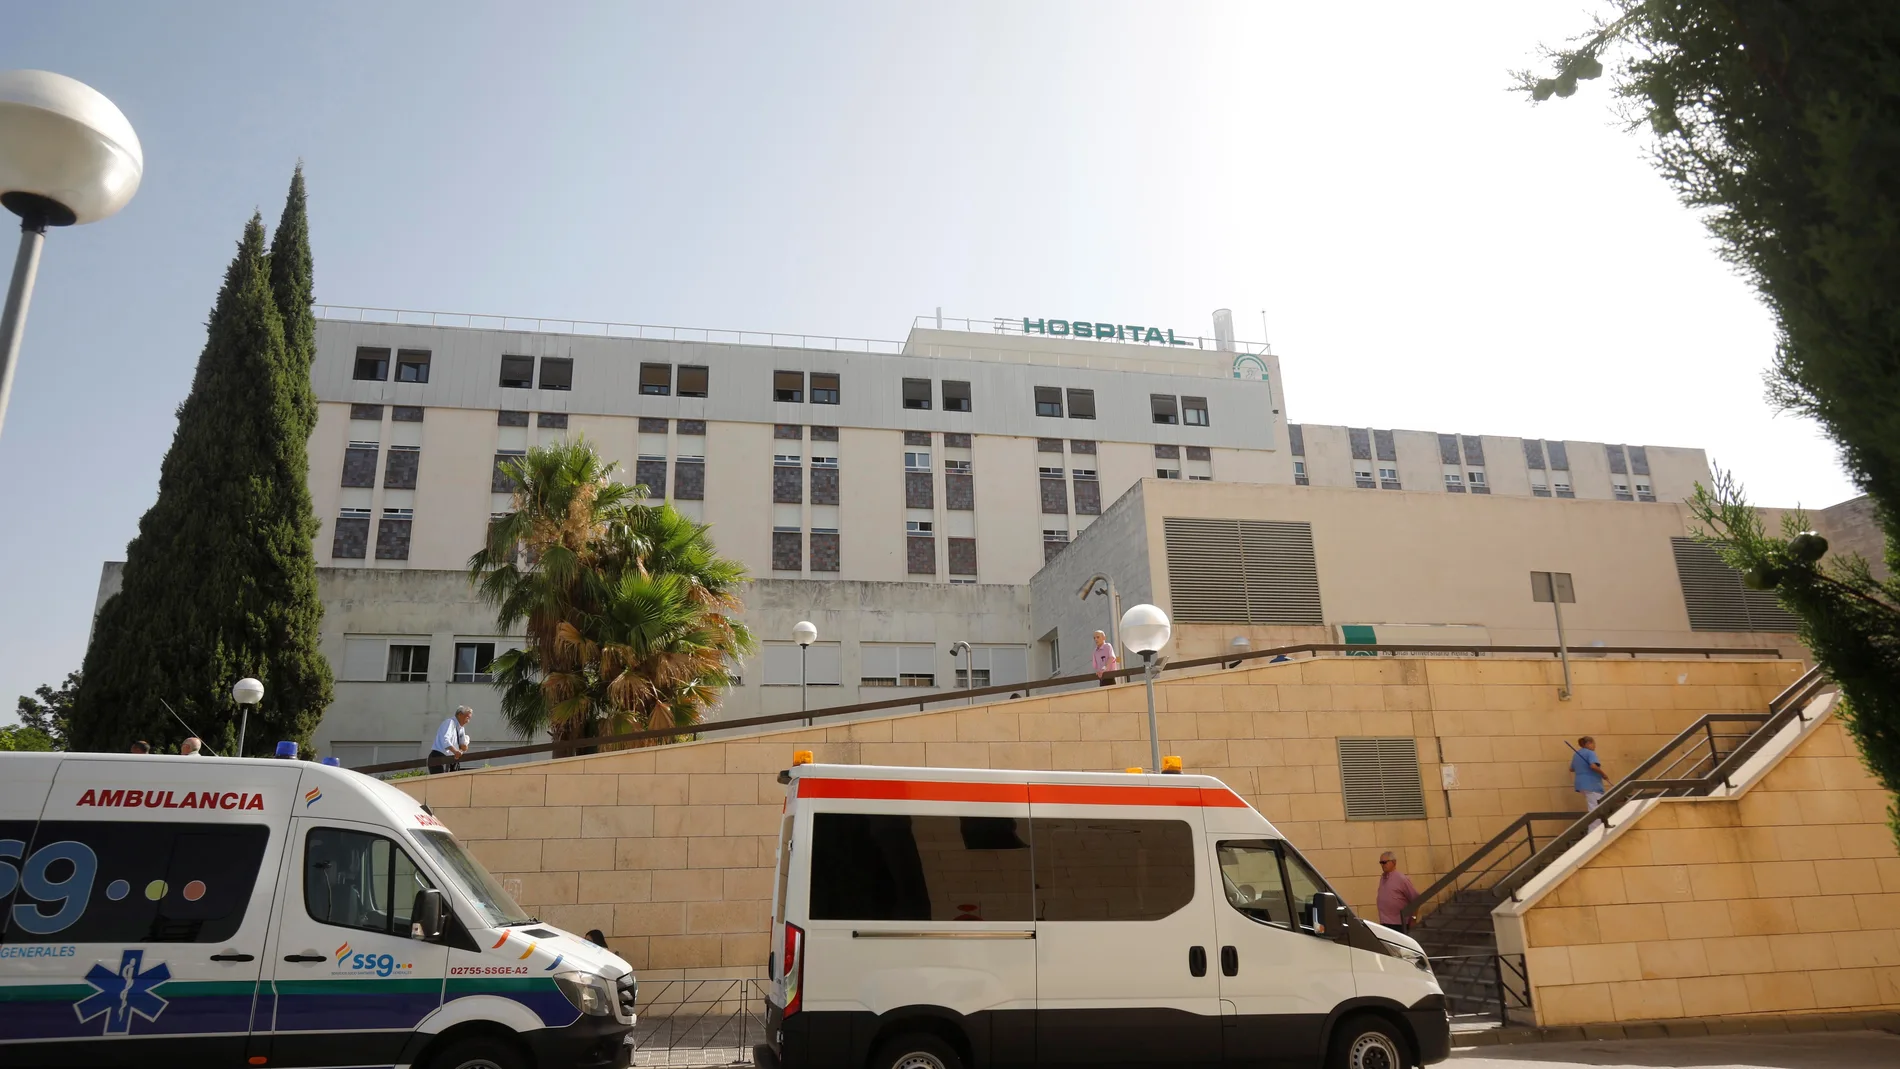 La imagen muestra la fachada de un hospital de la comunidad andaluza